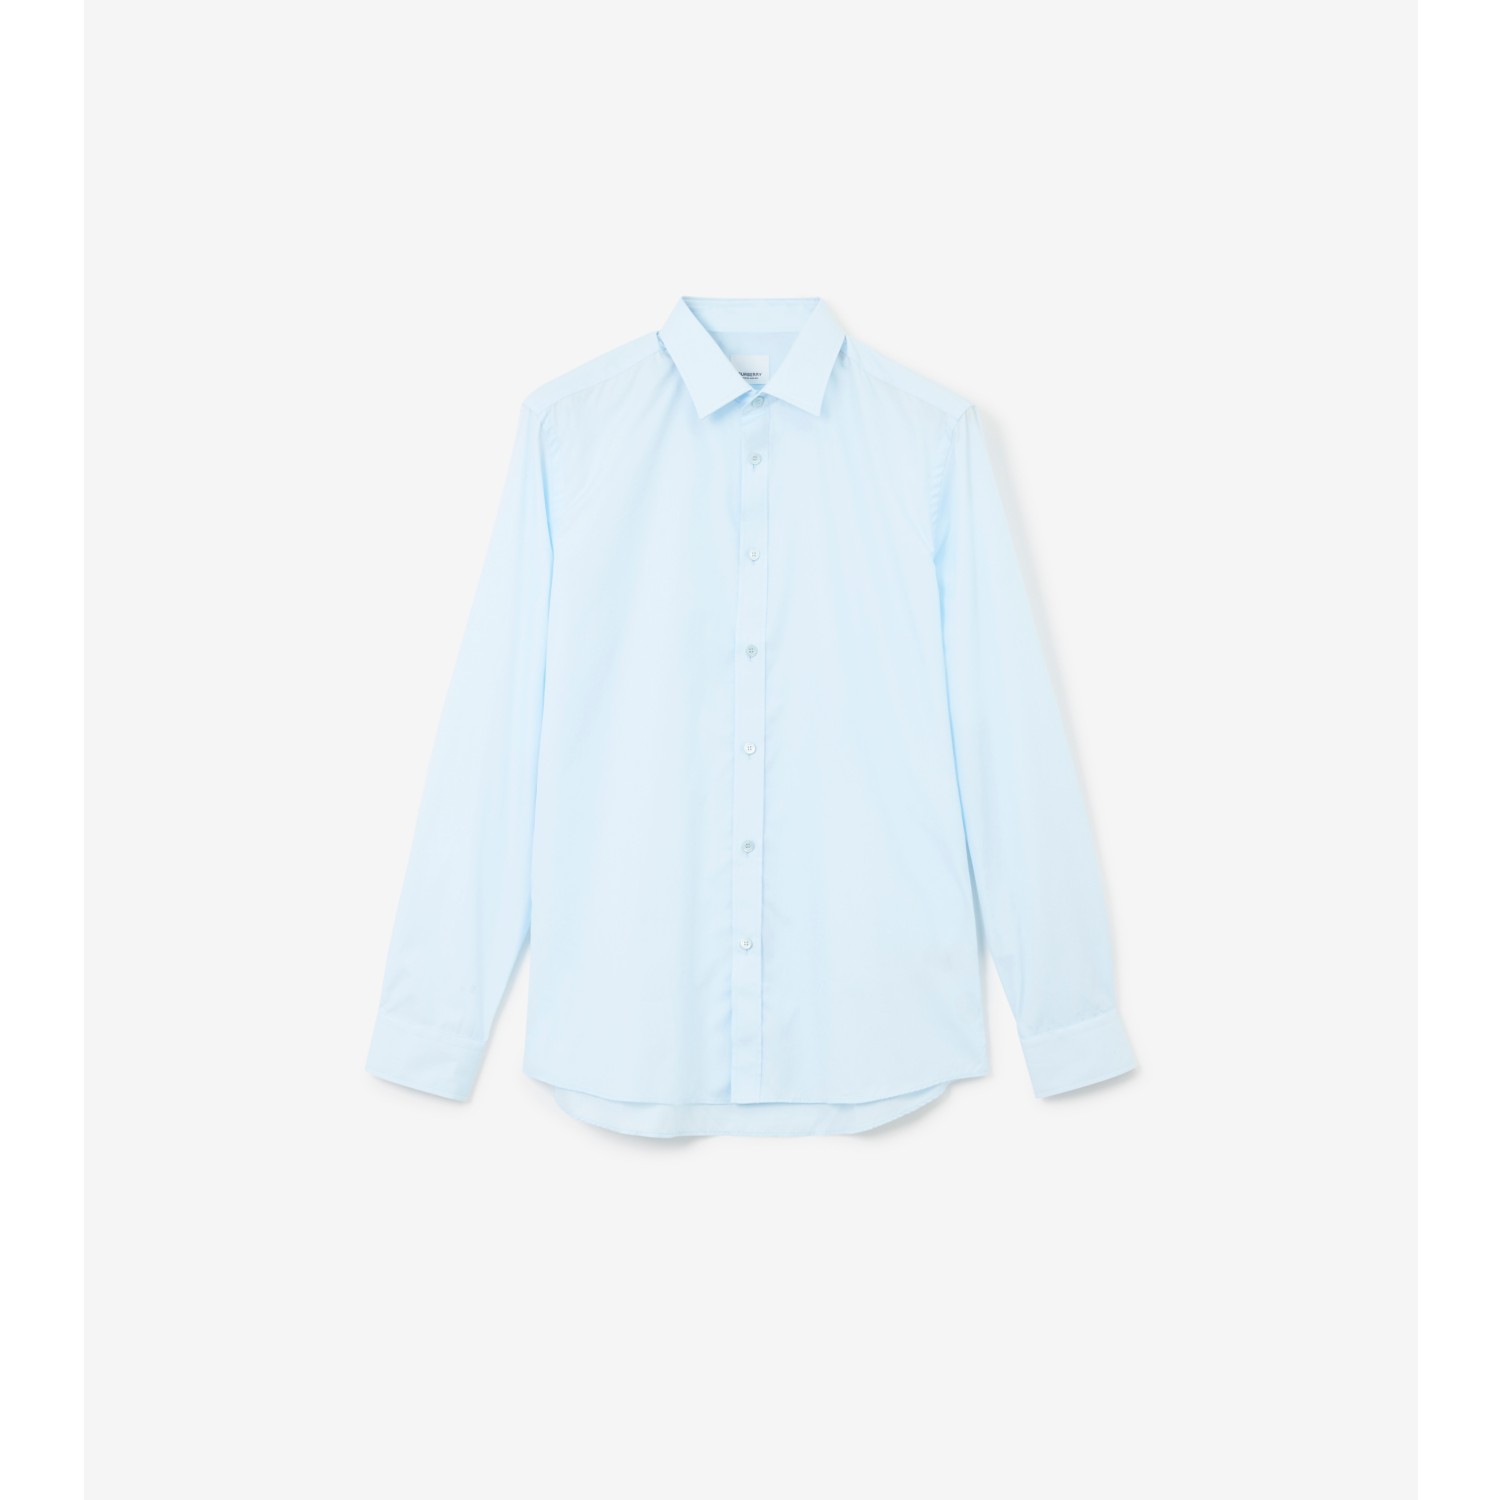 Monogram Motif Cotton Slim Fit Shirt in Pale Blue - Men | Burberry® Official